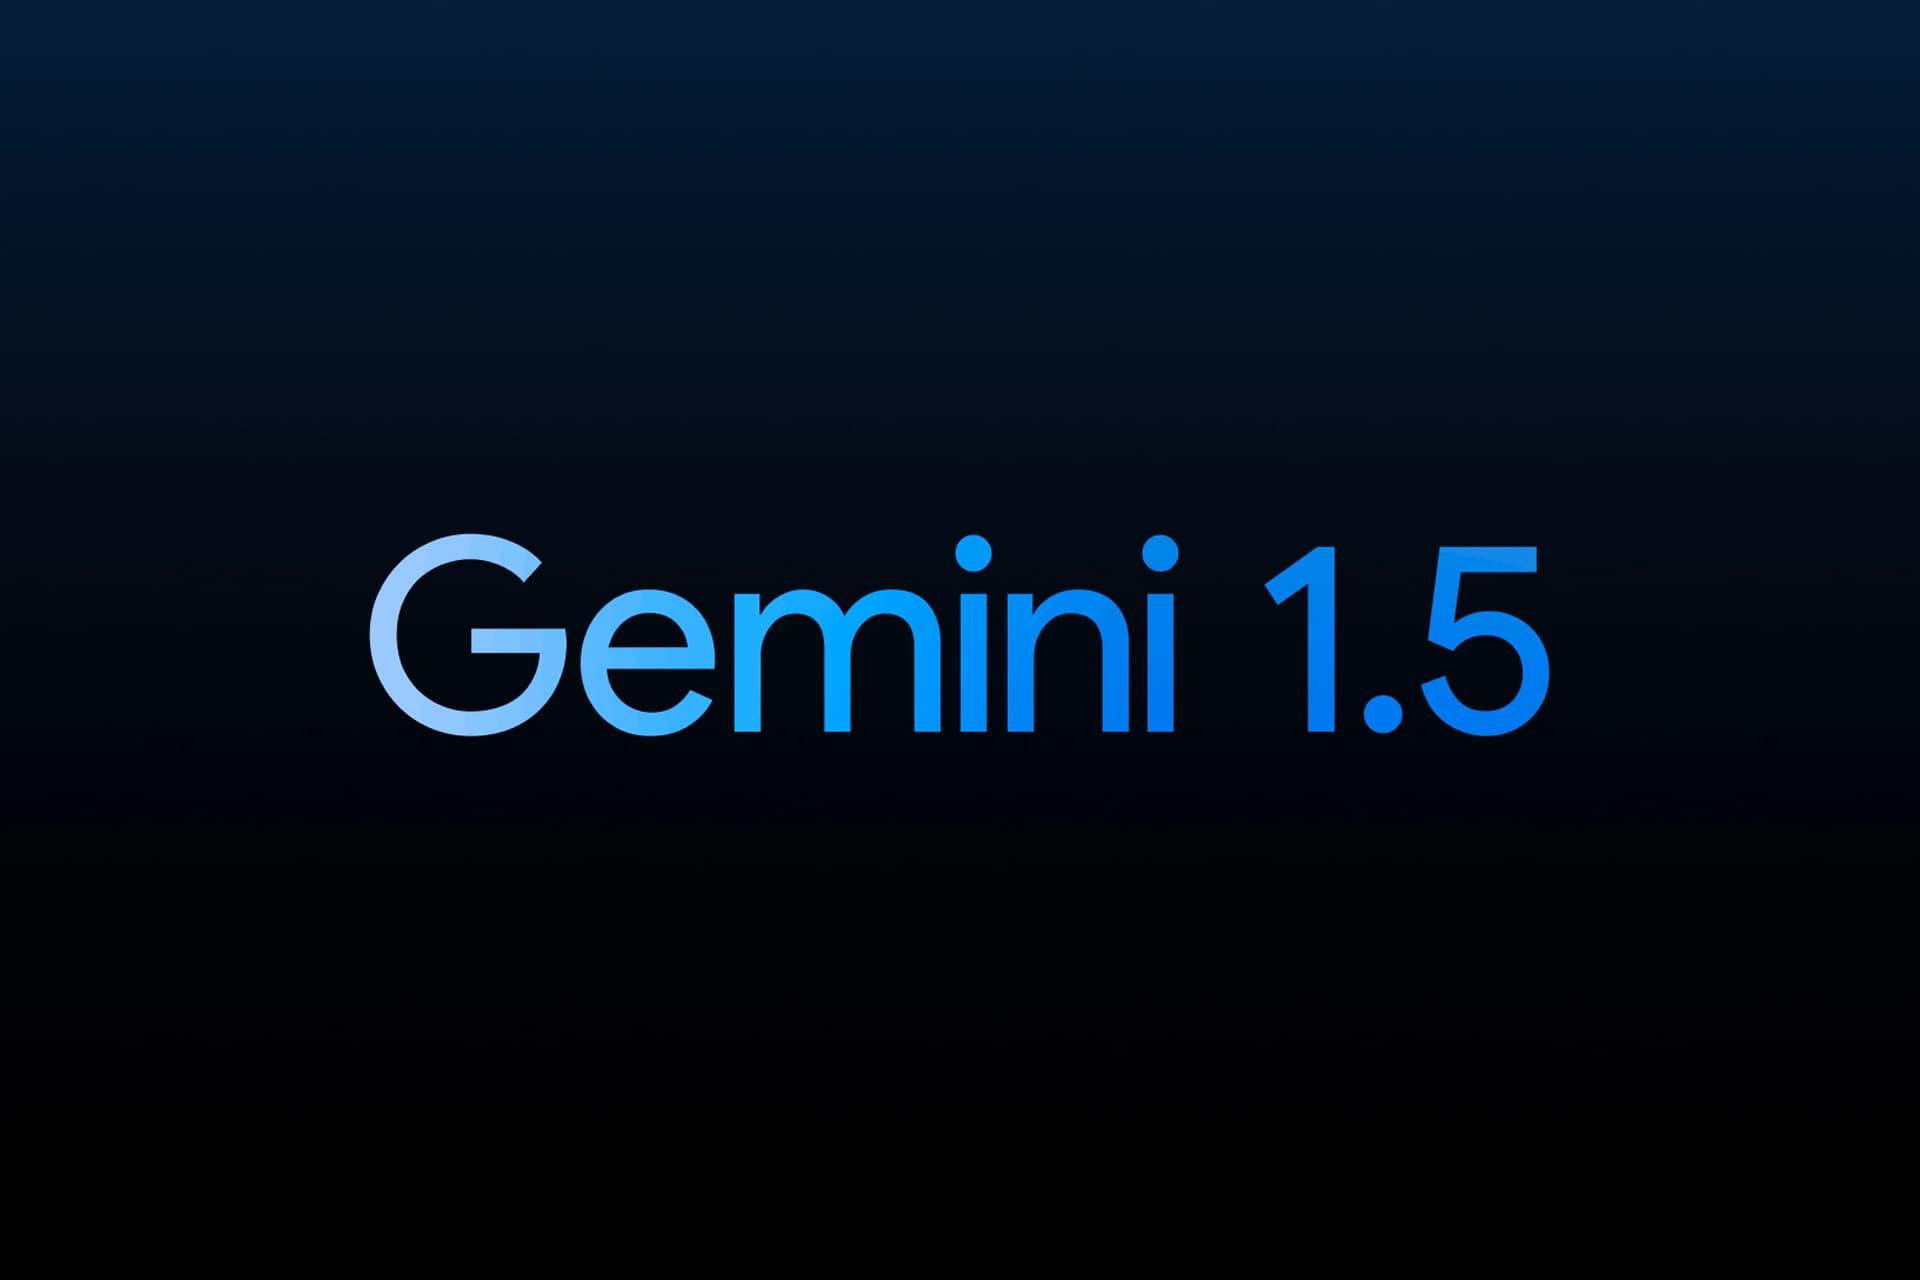 لوگو جمنای 1.5 گوگل / Google Gemini 1.5